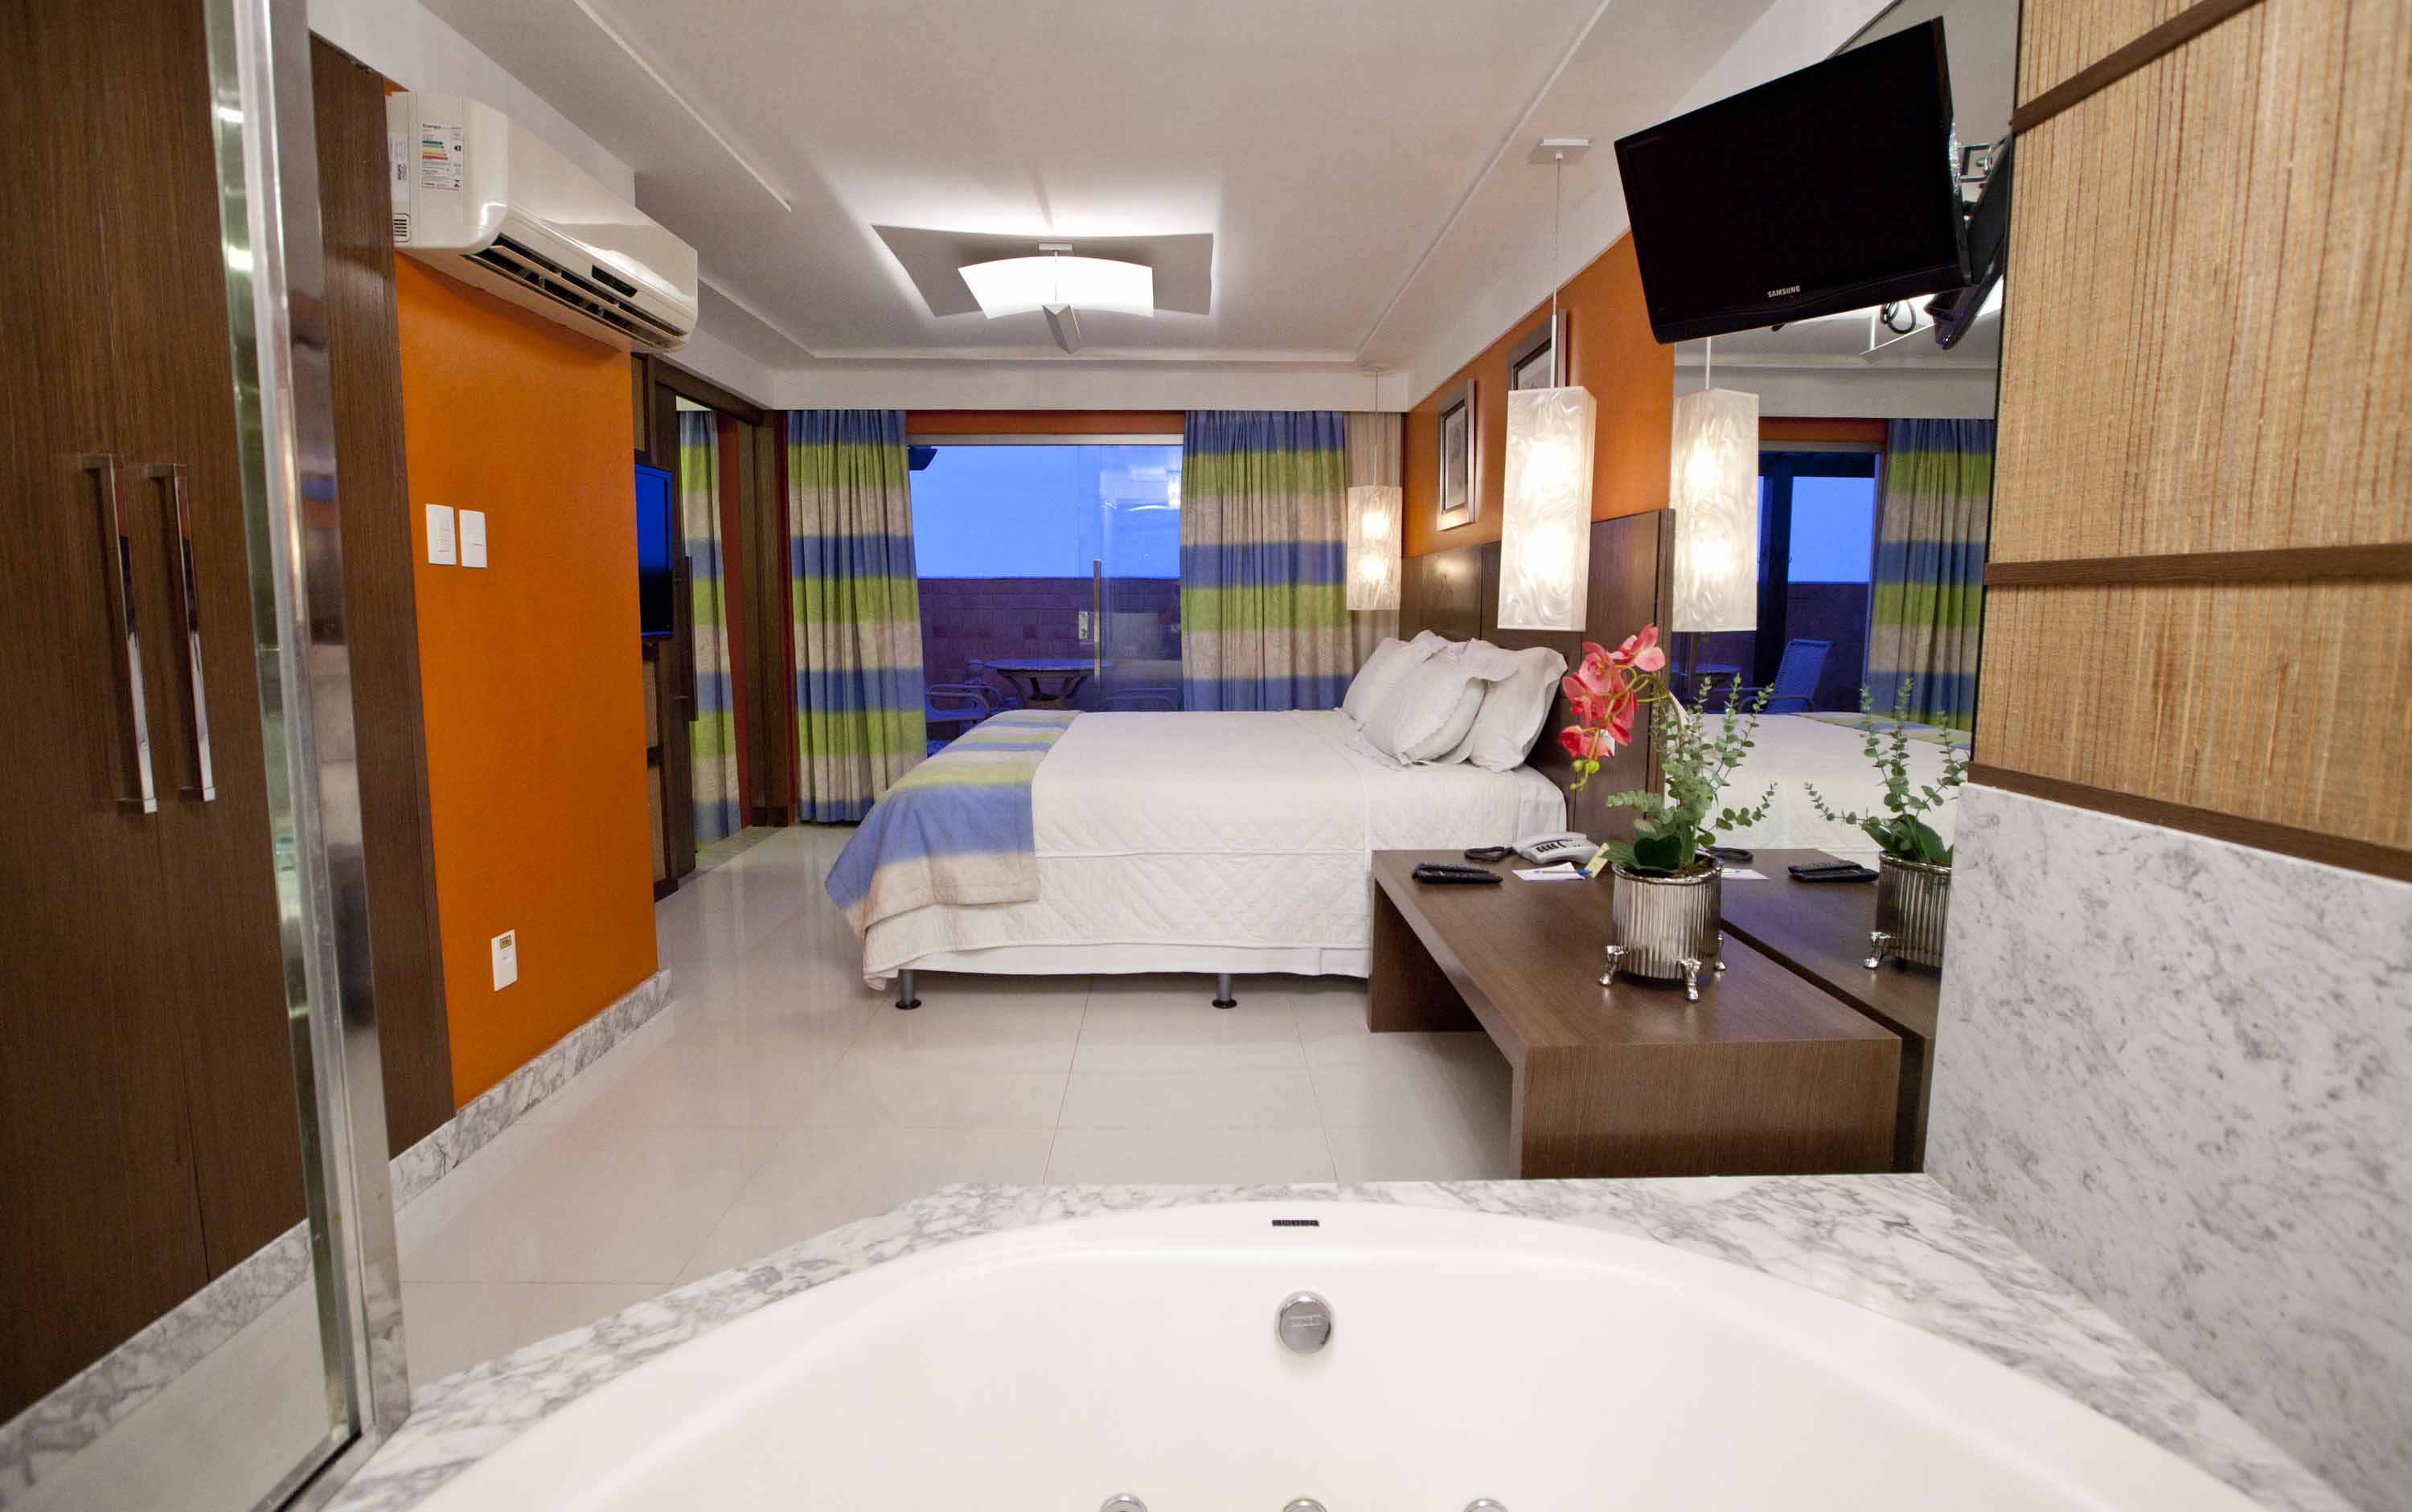 Aquarios Praia Hotel , Aracaju, hotéis em Aracaju, Fotos de Aracaju, praias de Aracaju, Sergipe